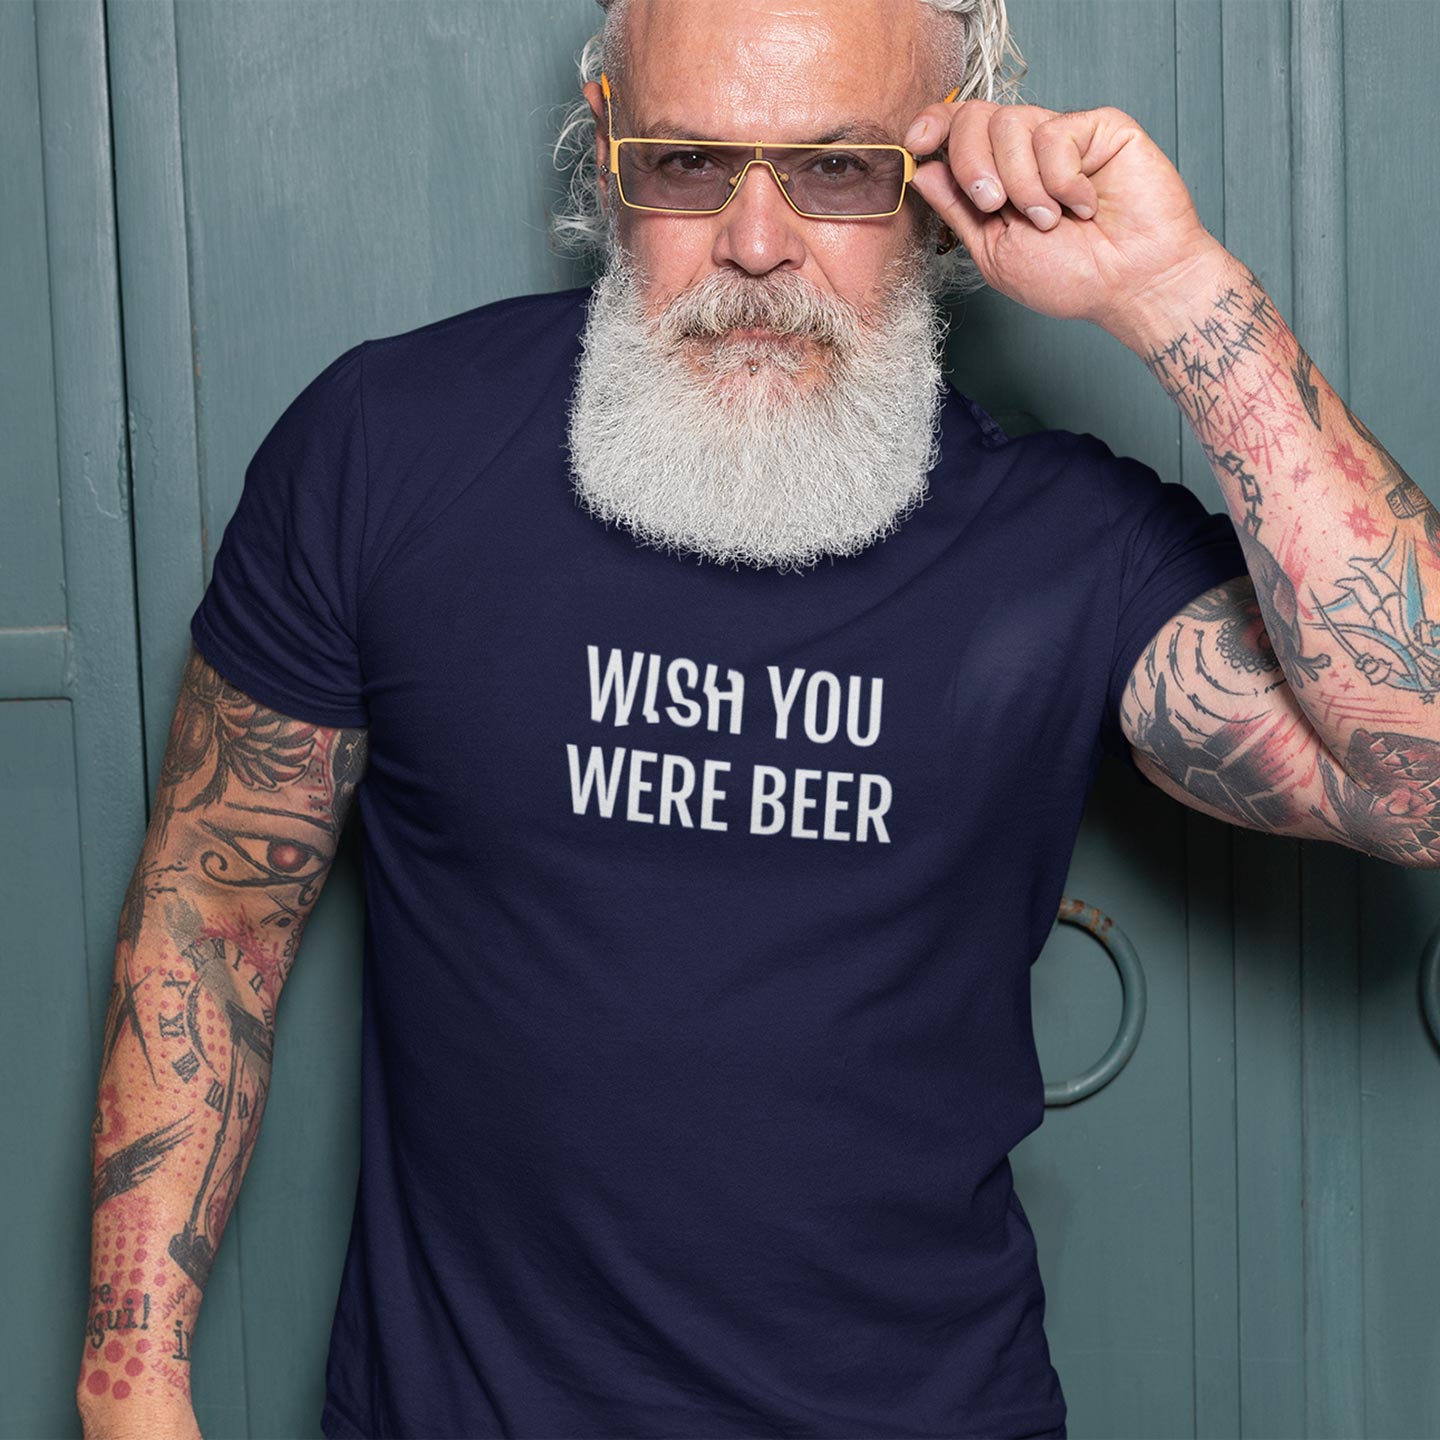 Navy Blauwe Bier t-shirt kopen? - Humor shirt